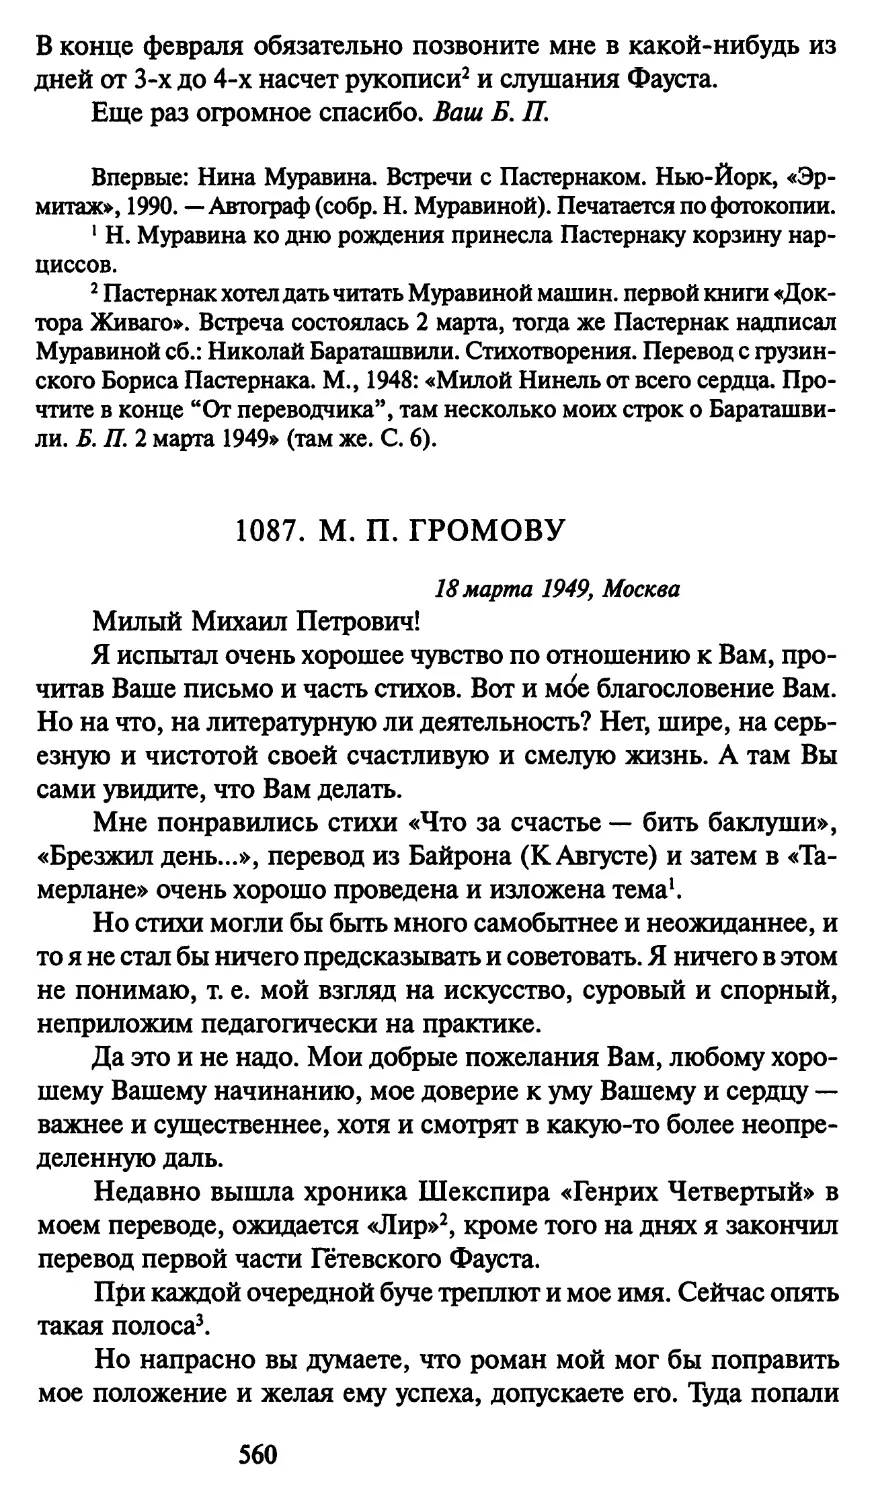 1087. М. П. Громову 18 марта 1949